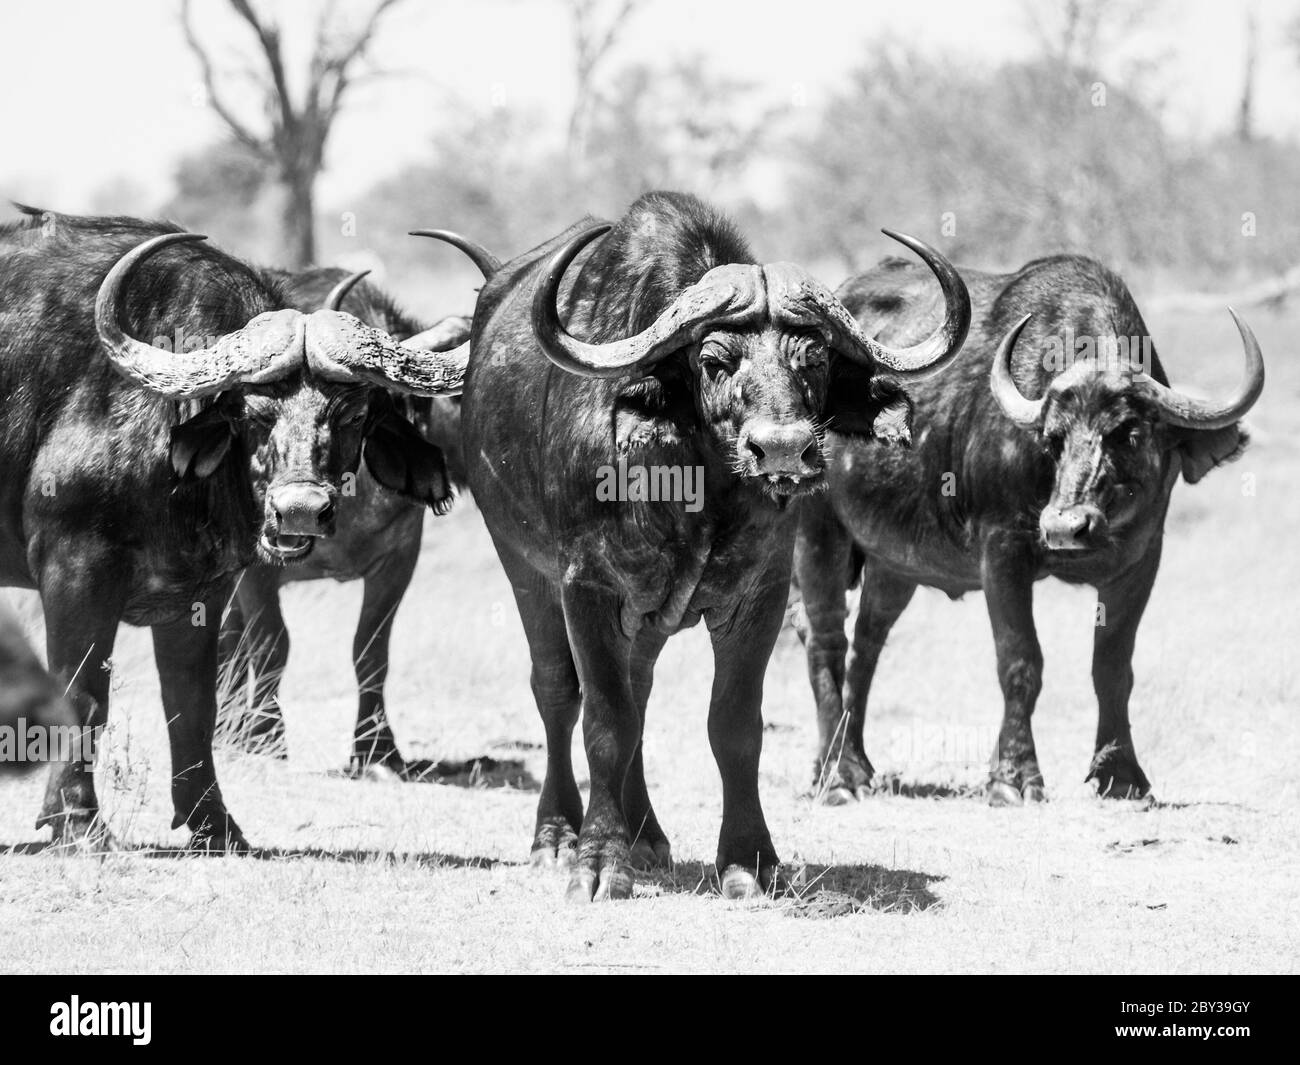 Buffle du cap africain au milieu du troupeau, delta de l'Okavango, Botswana. Image en noir et blanc. Banque D'Images